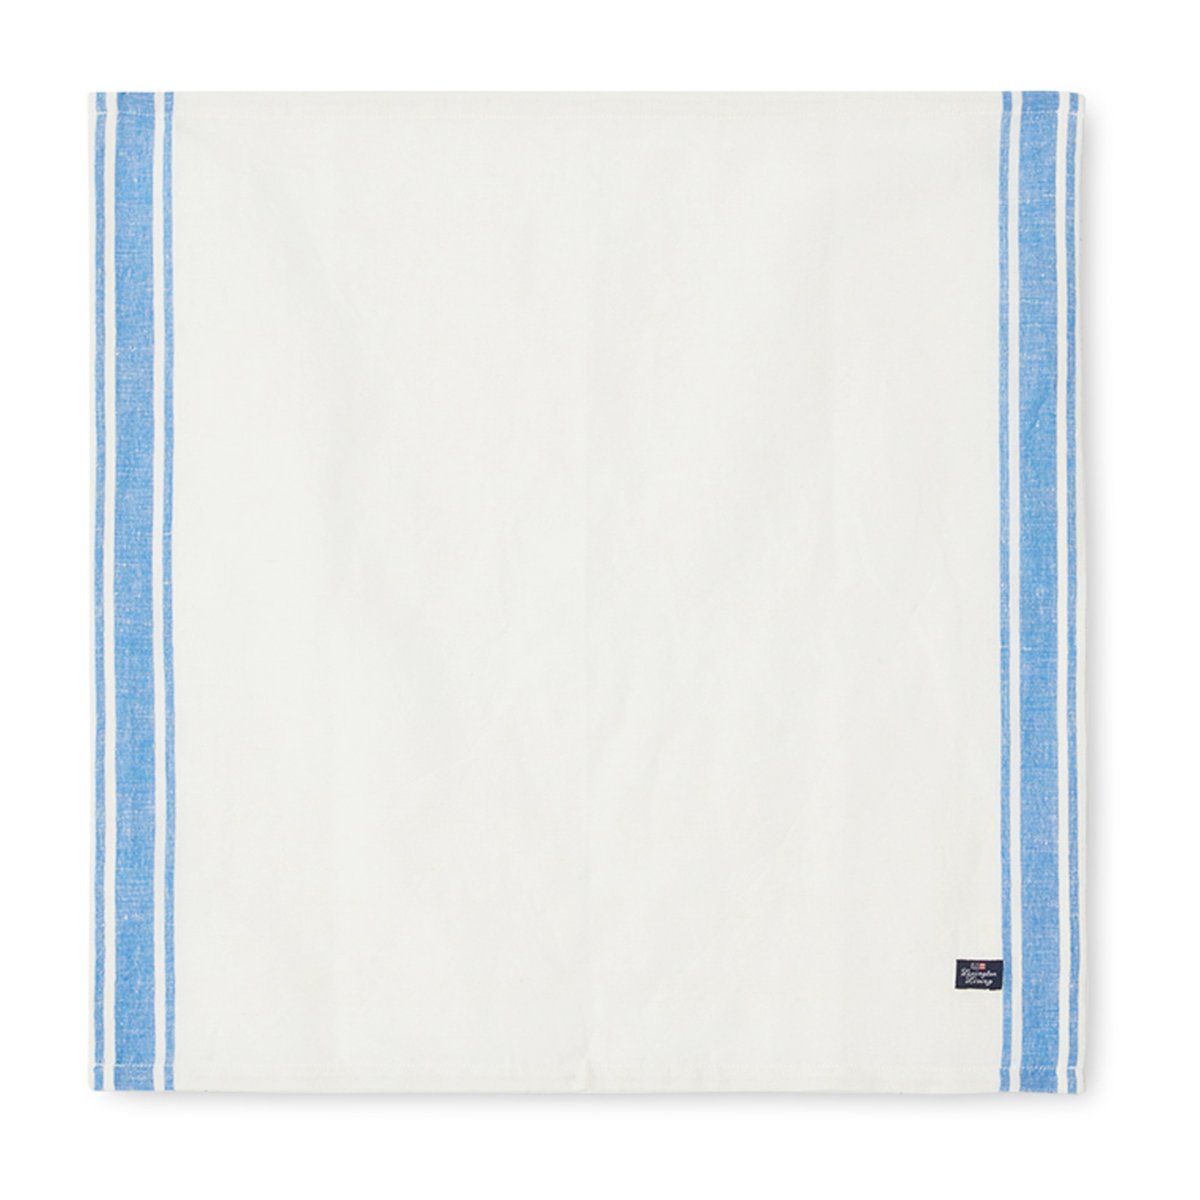 Lexington Linen Cotton Side Stripes -kangasservetti 50 x 50 cm Sininen-valkoinen